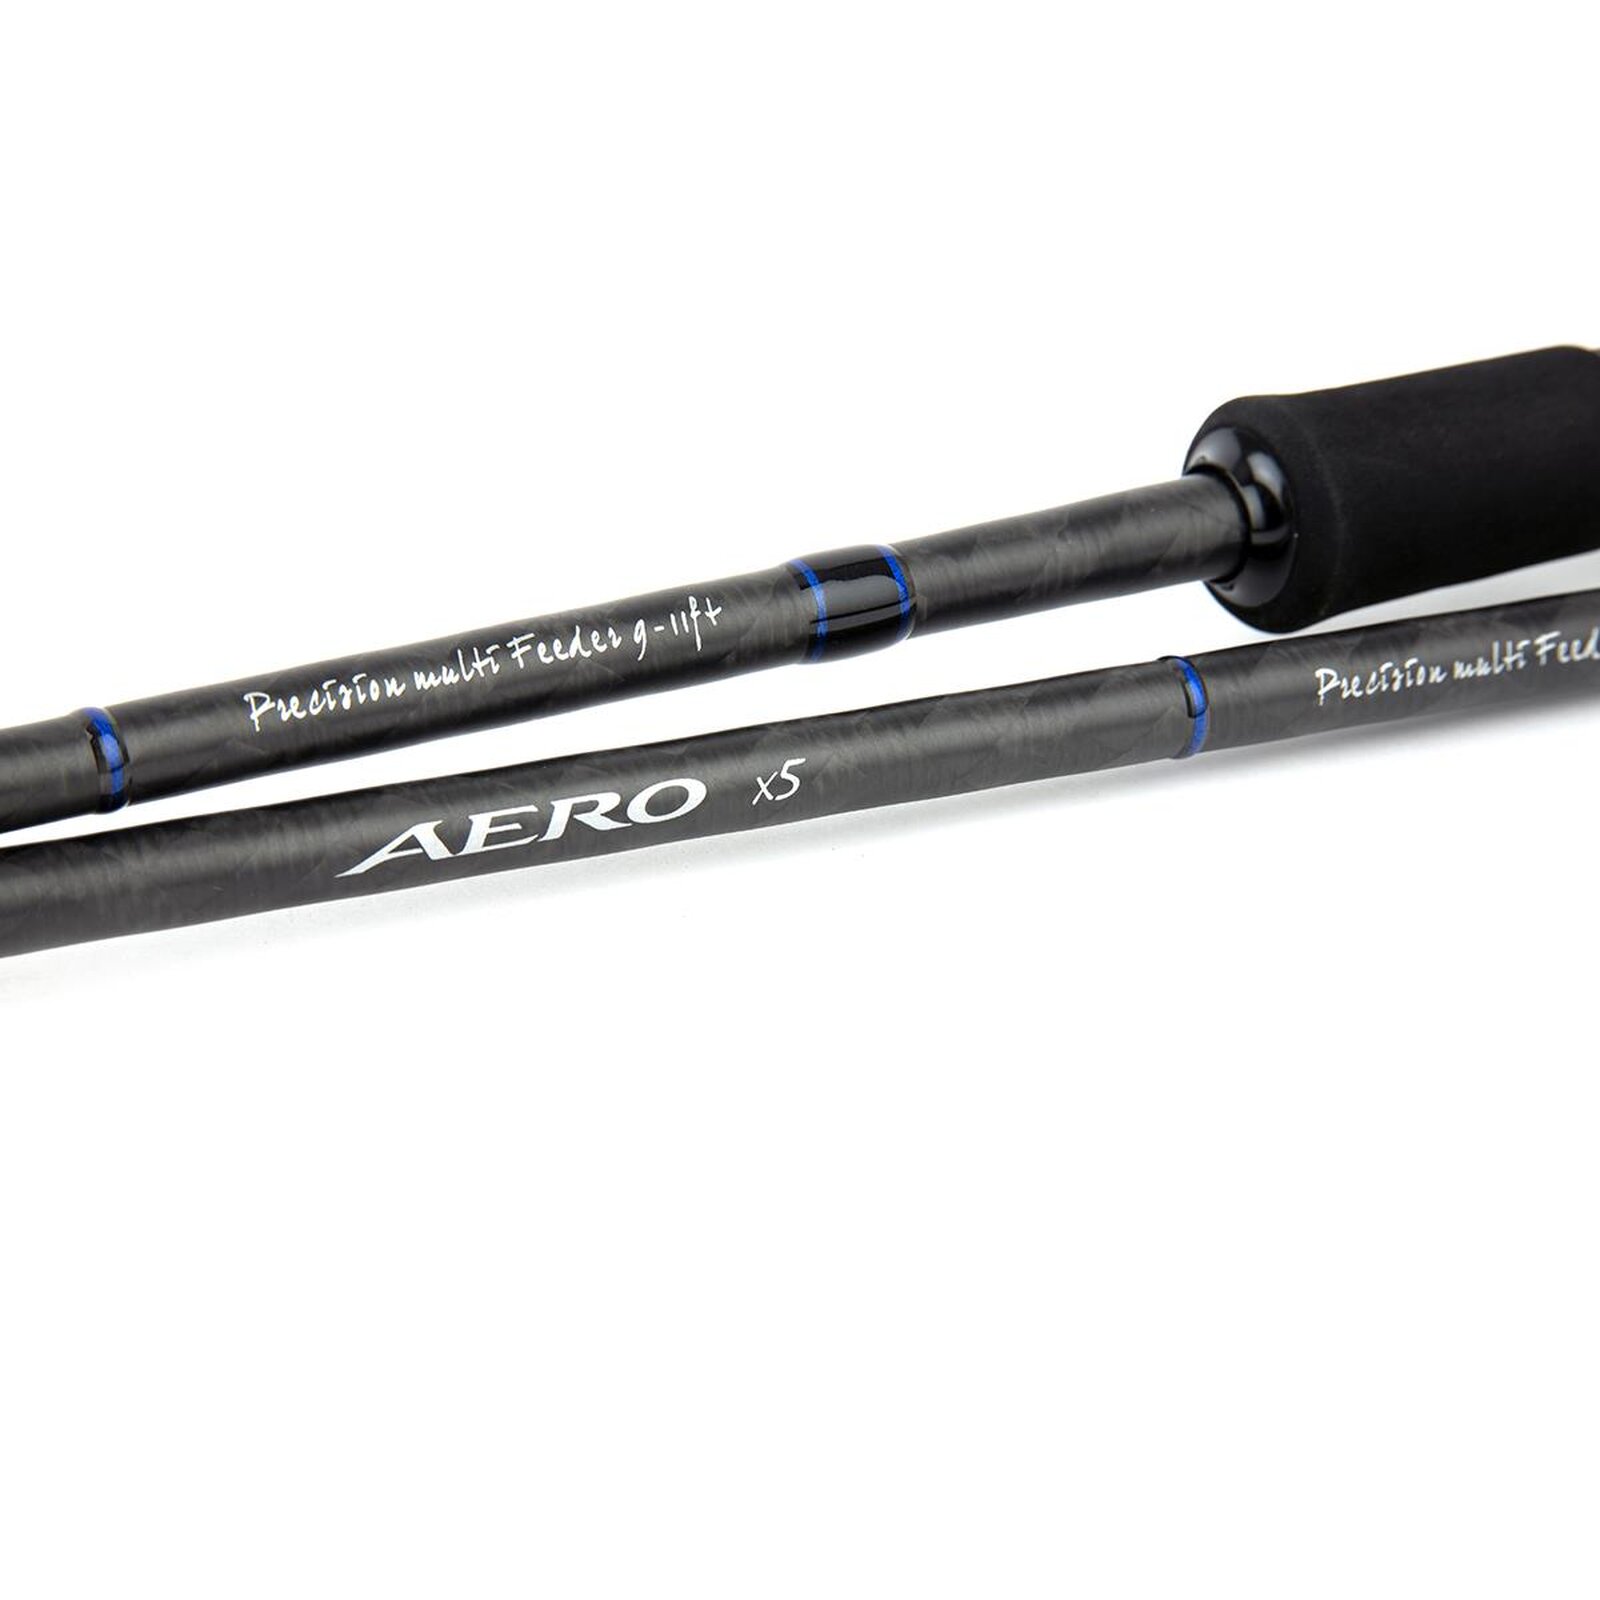 Shimano AERO X5 Precision Multi Feeder 9-11